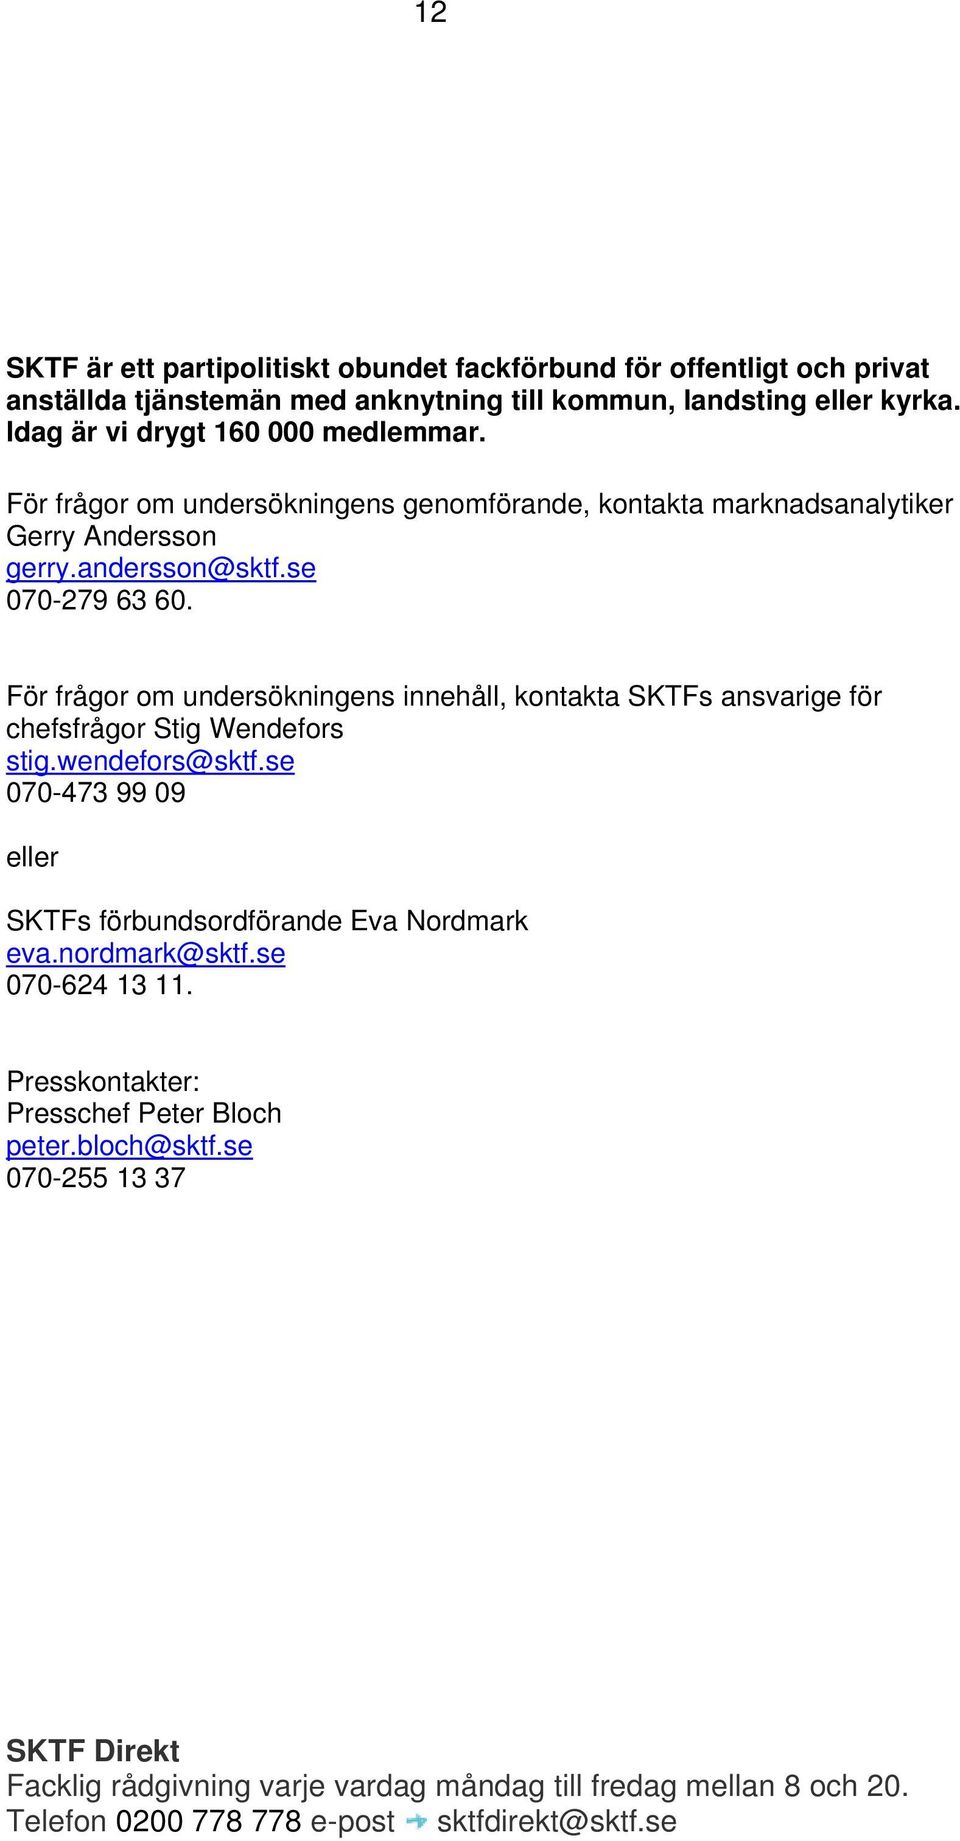 För frågor om undersökningens innehåll, kontakta SKTFs ansvarige för chefsfrågor Stig Wendefors stig.wendefors@sktf.se 070-473 99 09 eller SKTFs förbundsordförande Eva Nordmark eva.